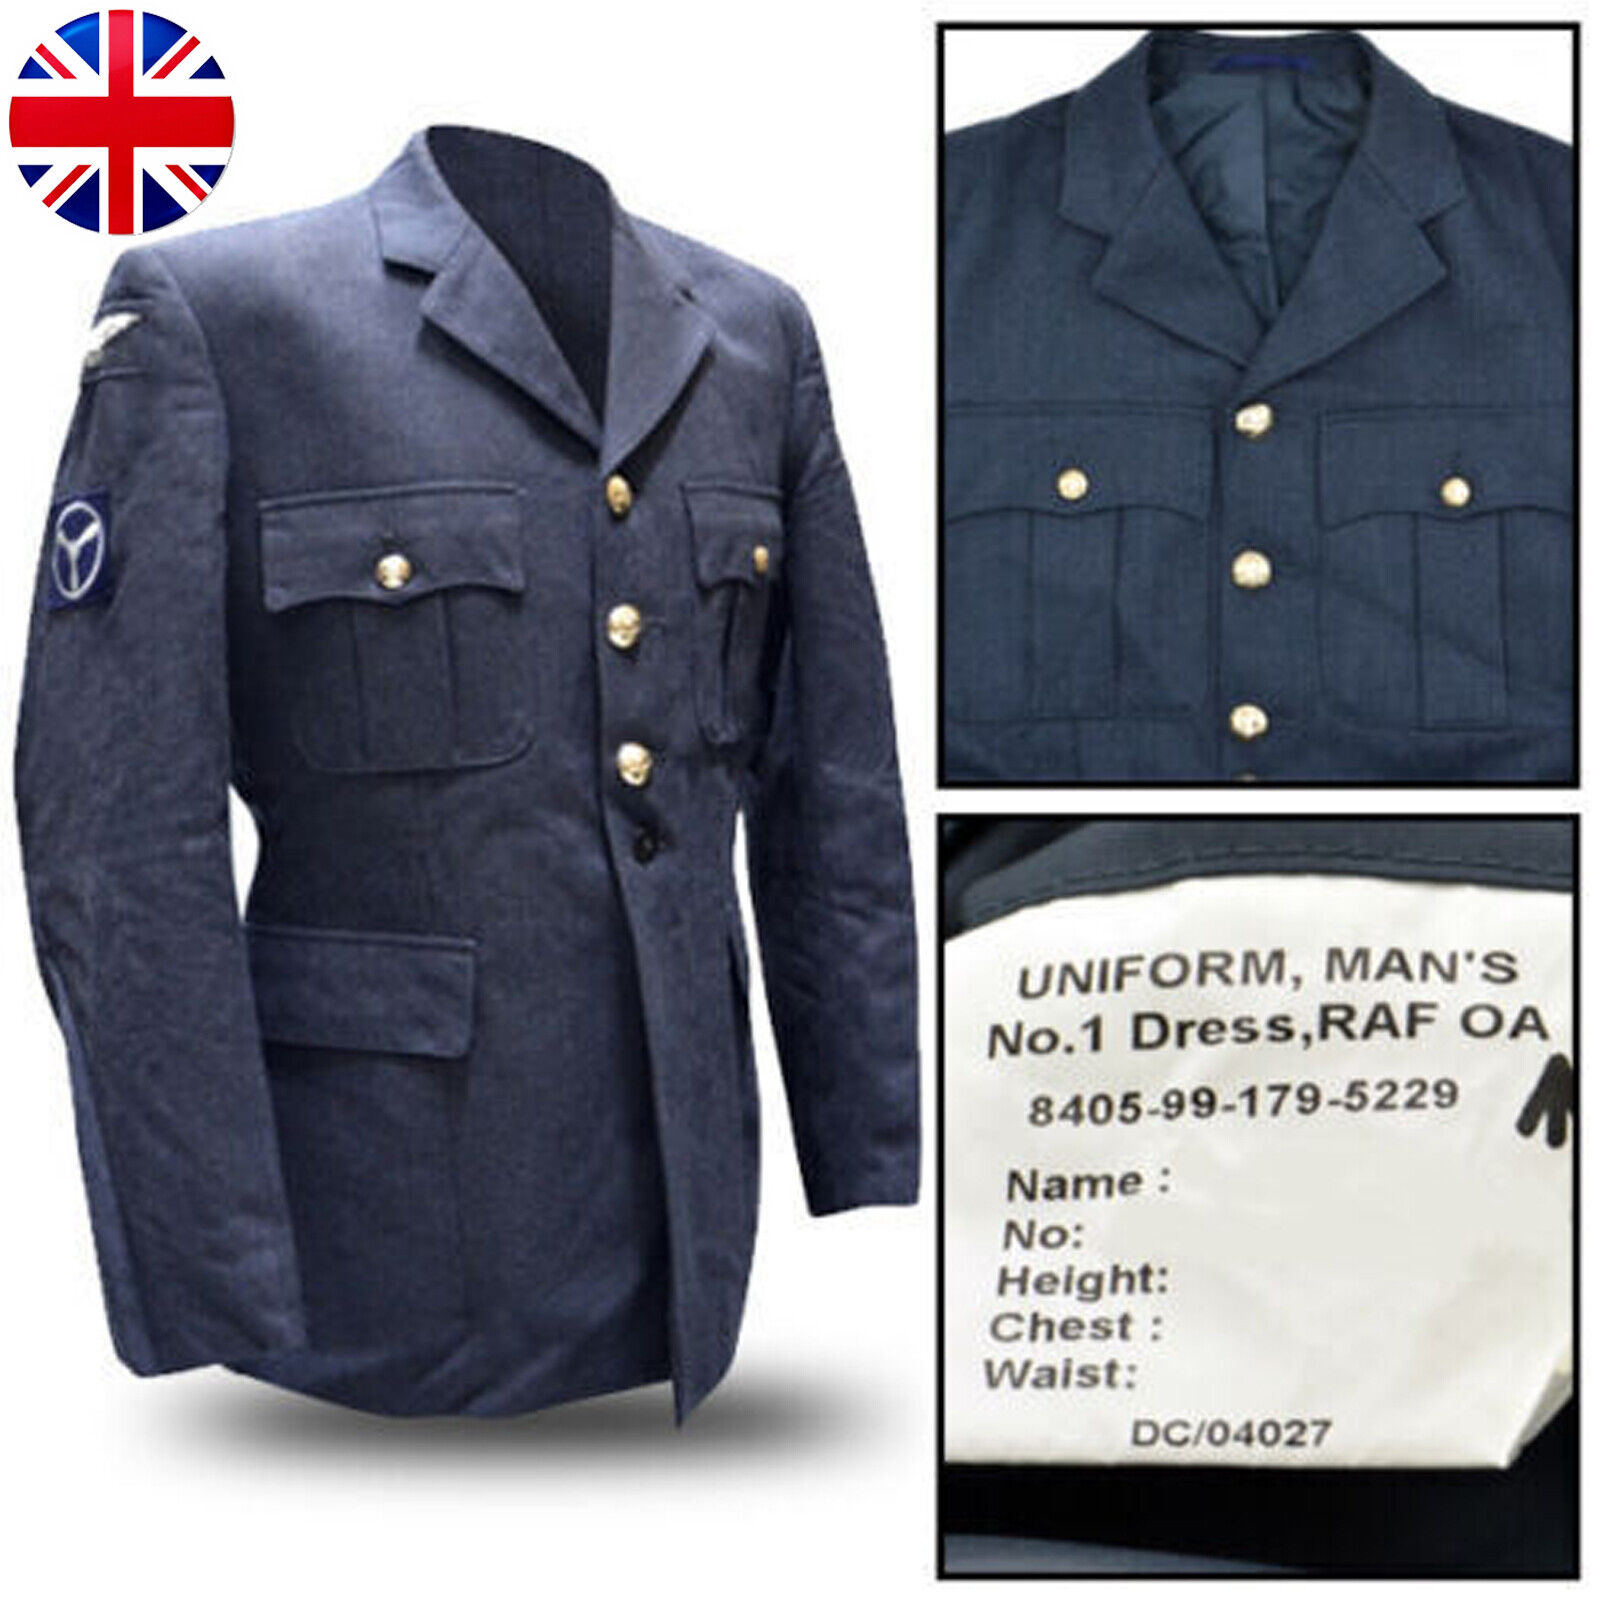 British Army RAF No 1 Royal Air Force Dress Uniform Jacket Tunic Blue Wool 